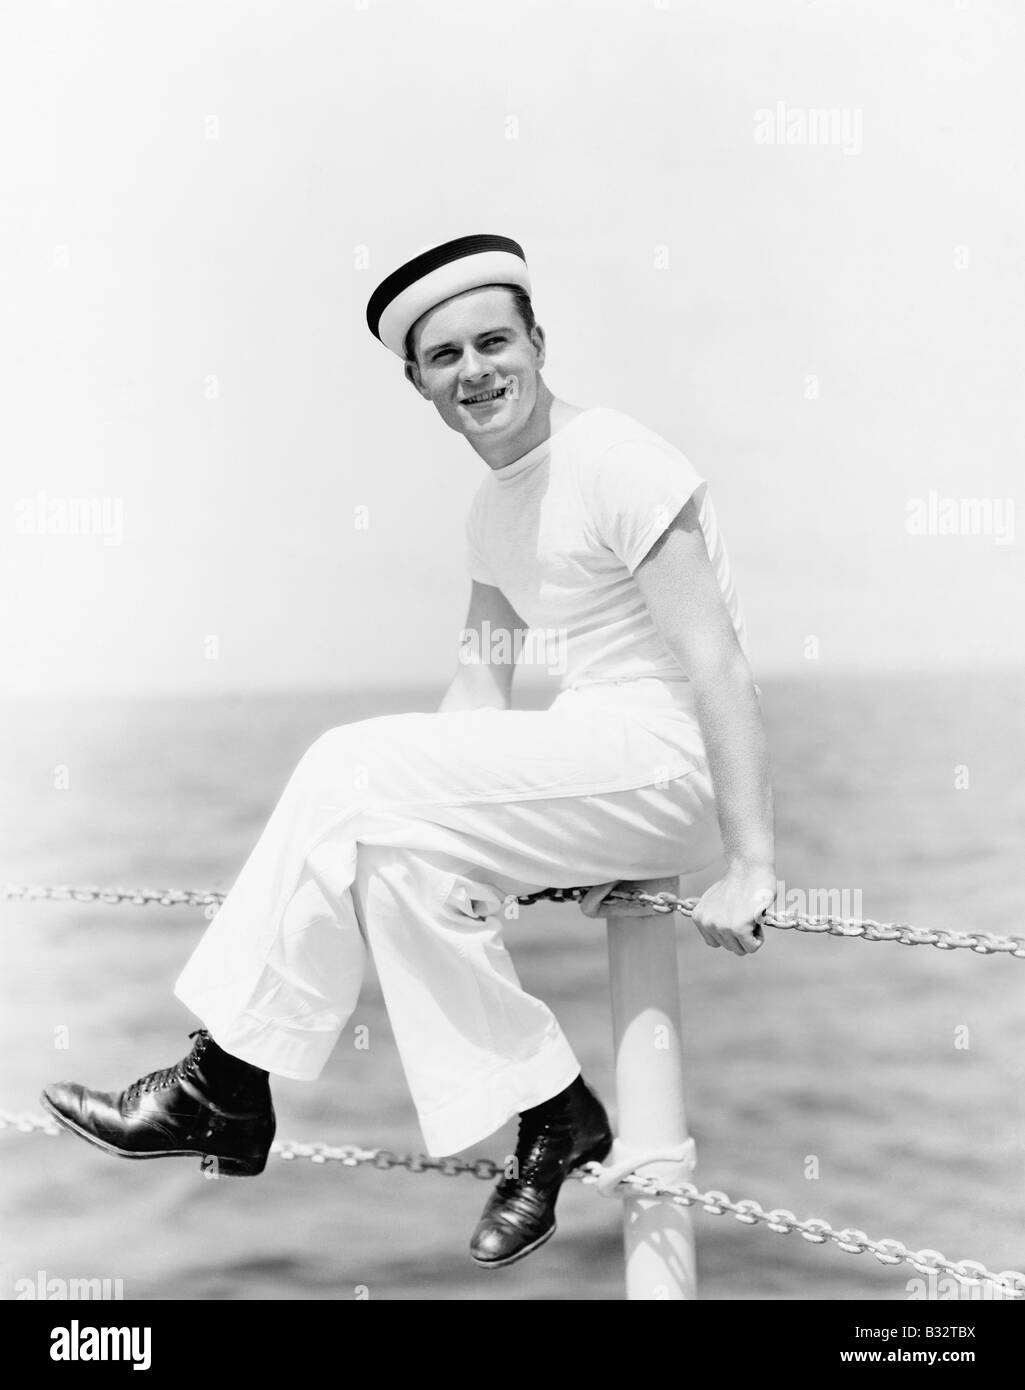 Portrait d'un marin assis sur le pôle d'un bateau et smiling Banque D'Images